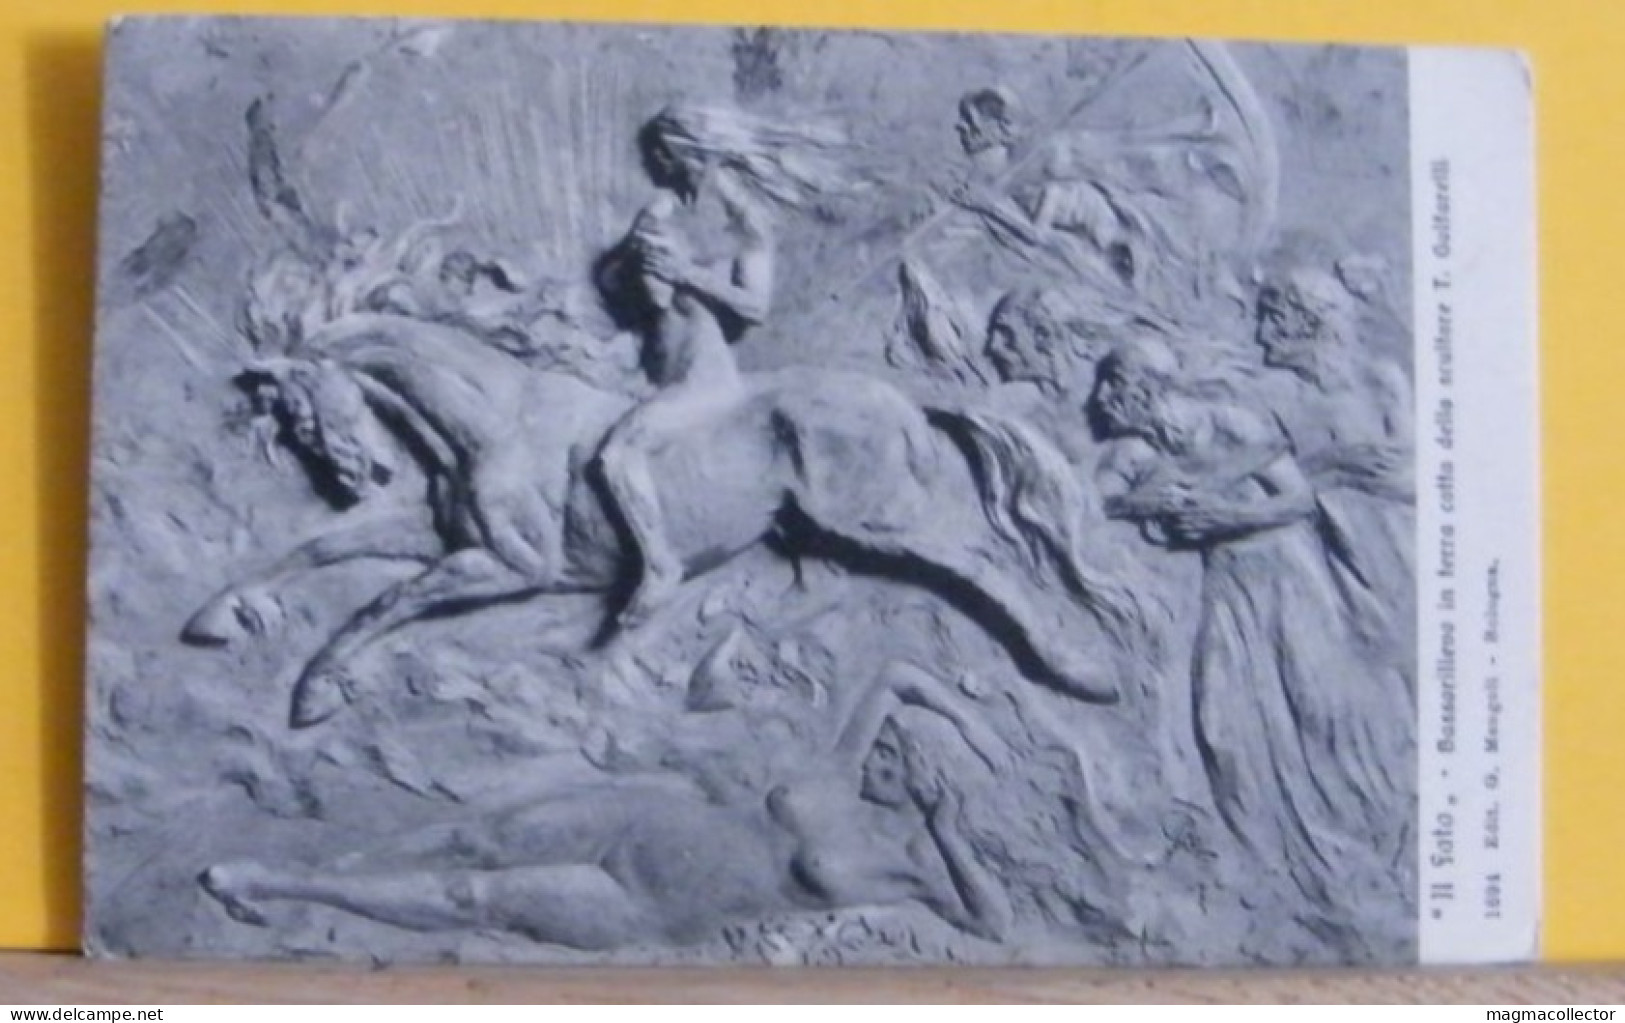 (ART3)TULLO - GOLFARELLI - IL FATO (ERINNI)  BASSORILIEVO (BOLOGNA MUSEO DEL RISORGIMENTO) - IL FATO  - VIAGGIATA 1918 - Skulpturen